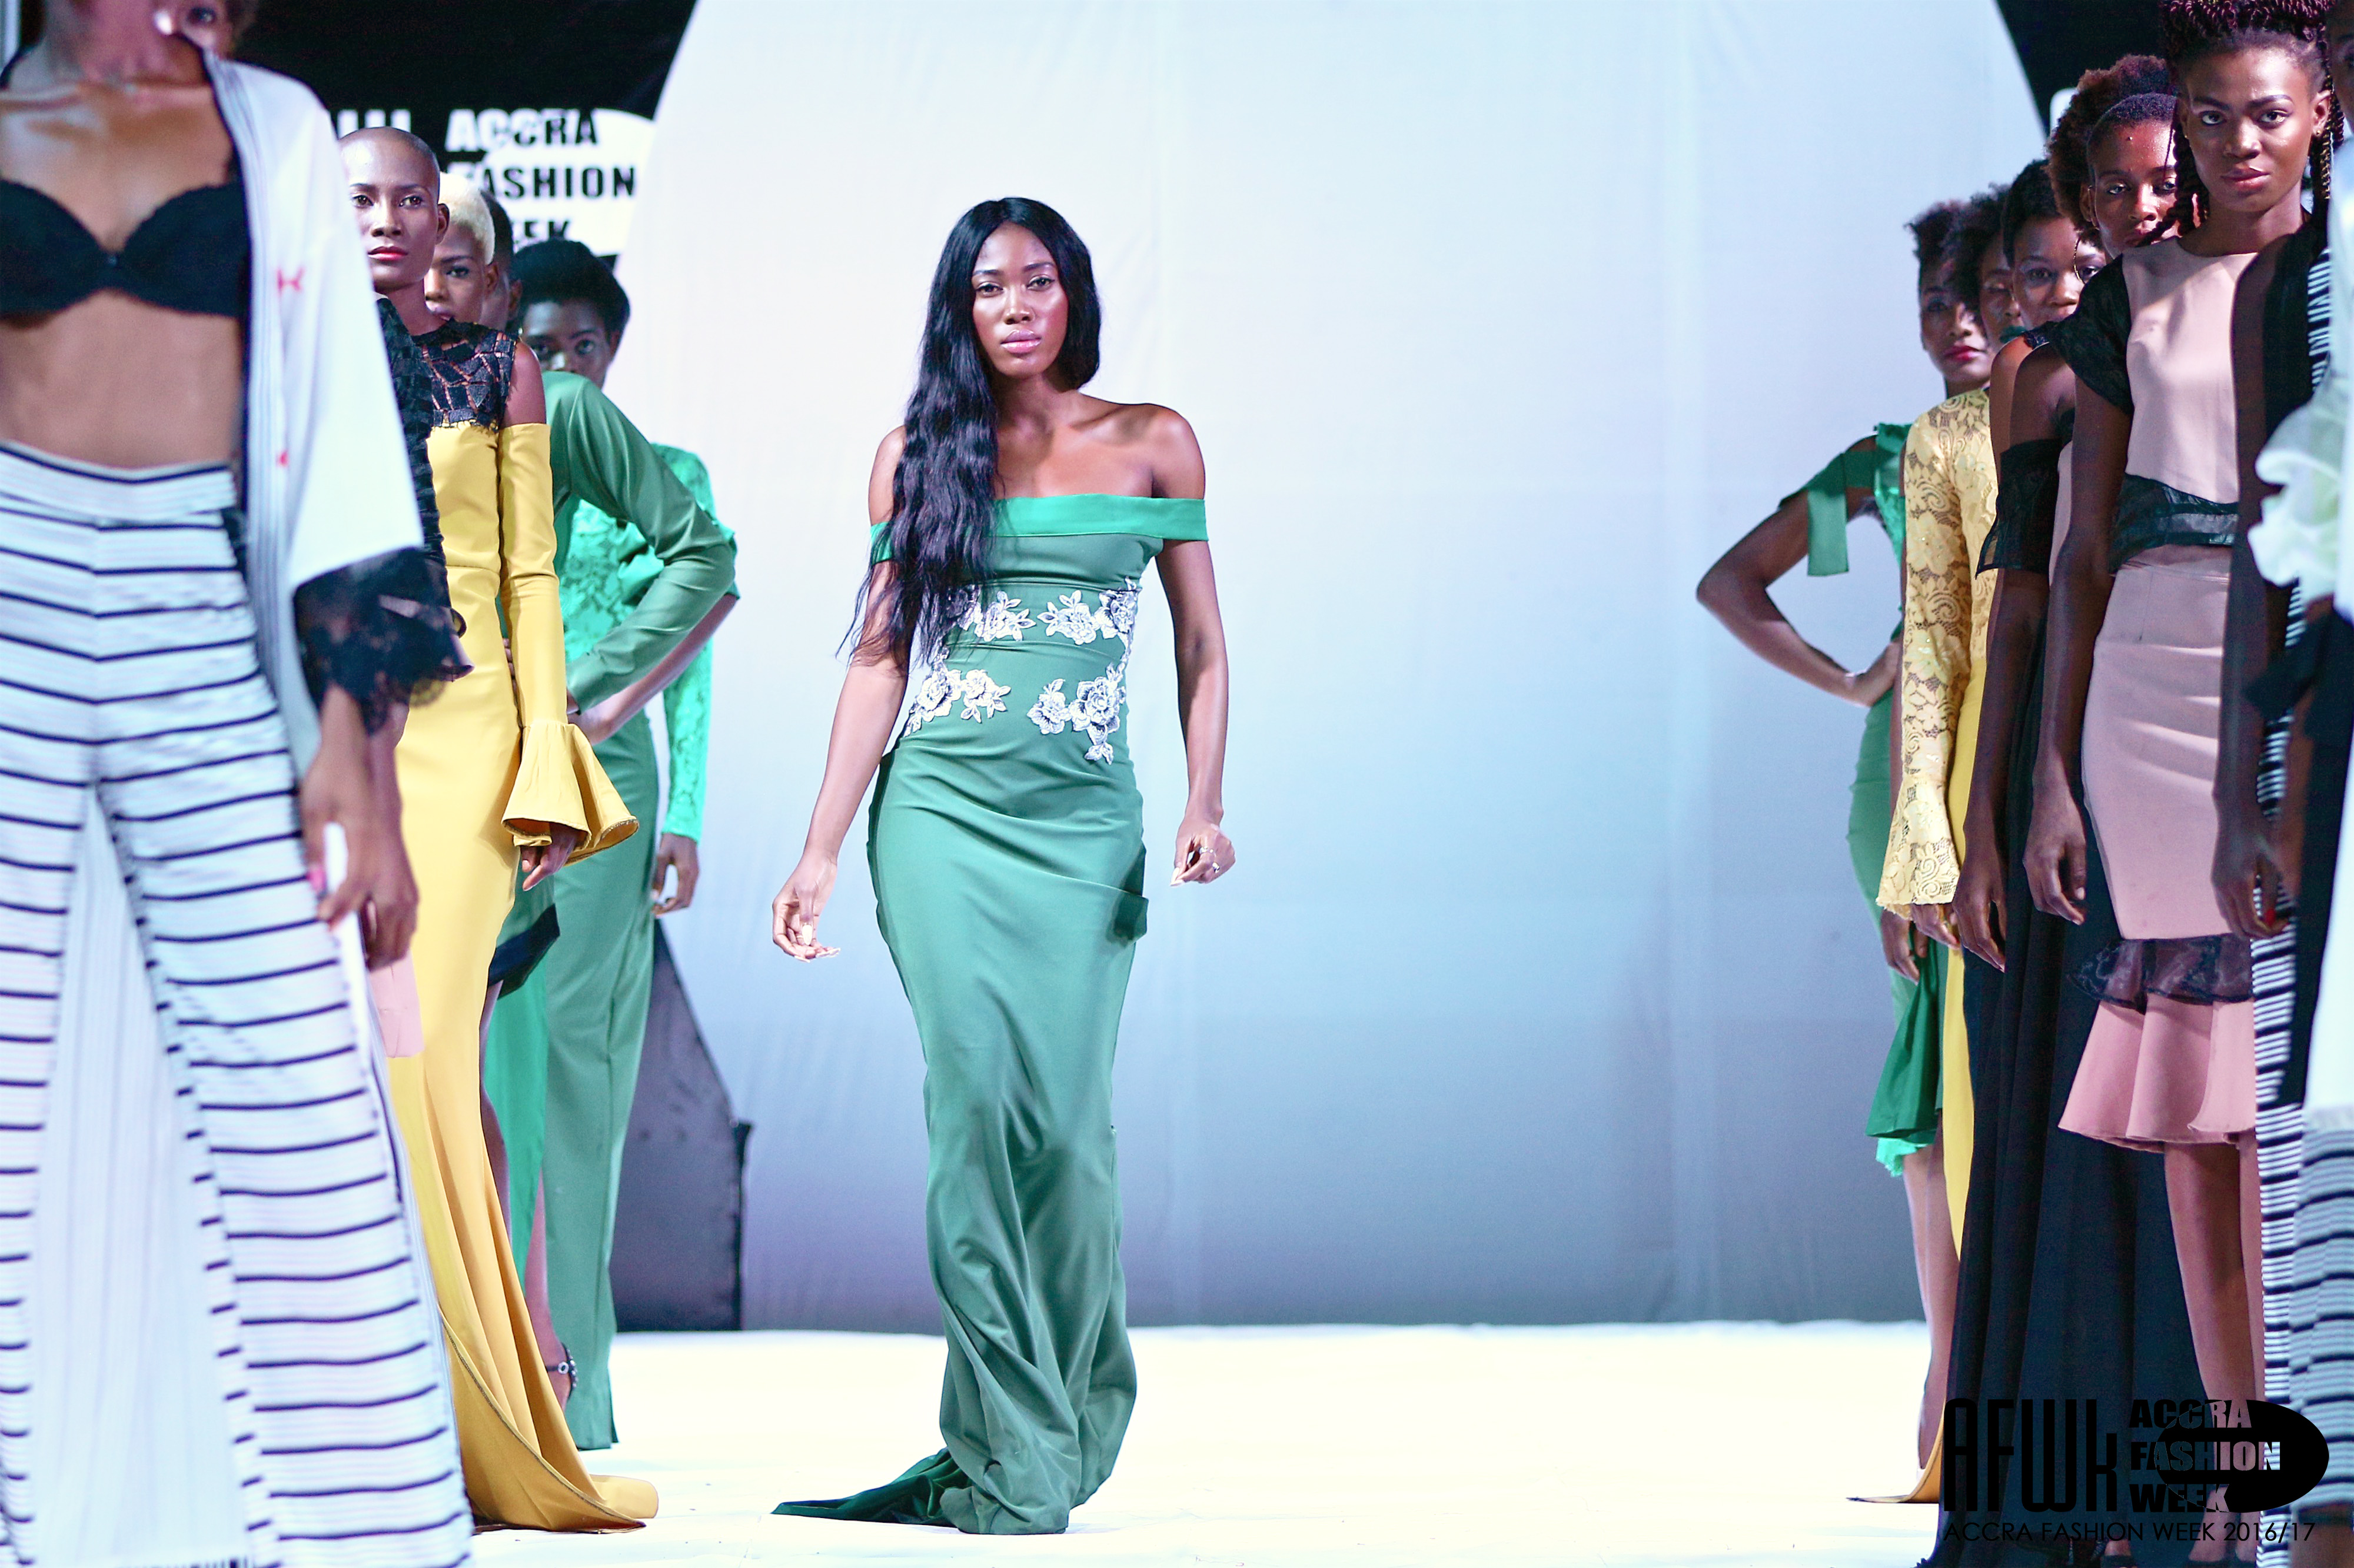 RÃ©sultat de recherche d'images pour "Accra Fashion Week 18"